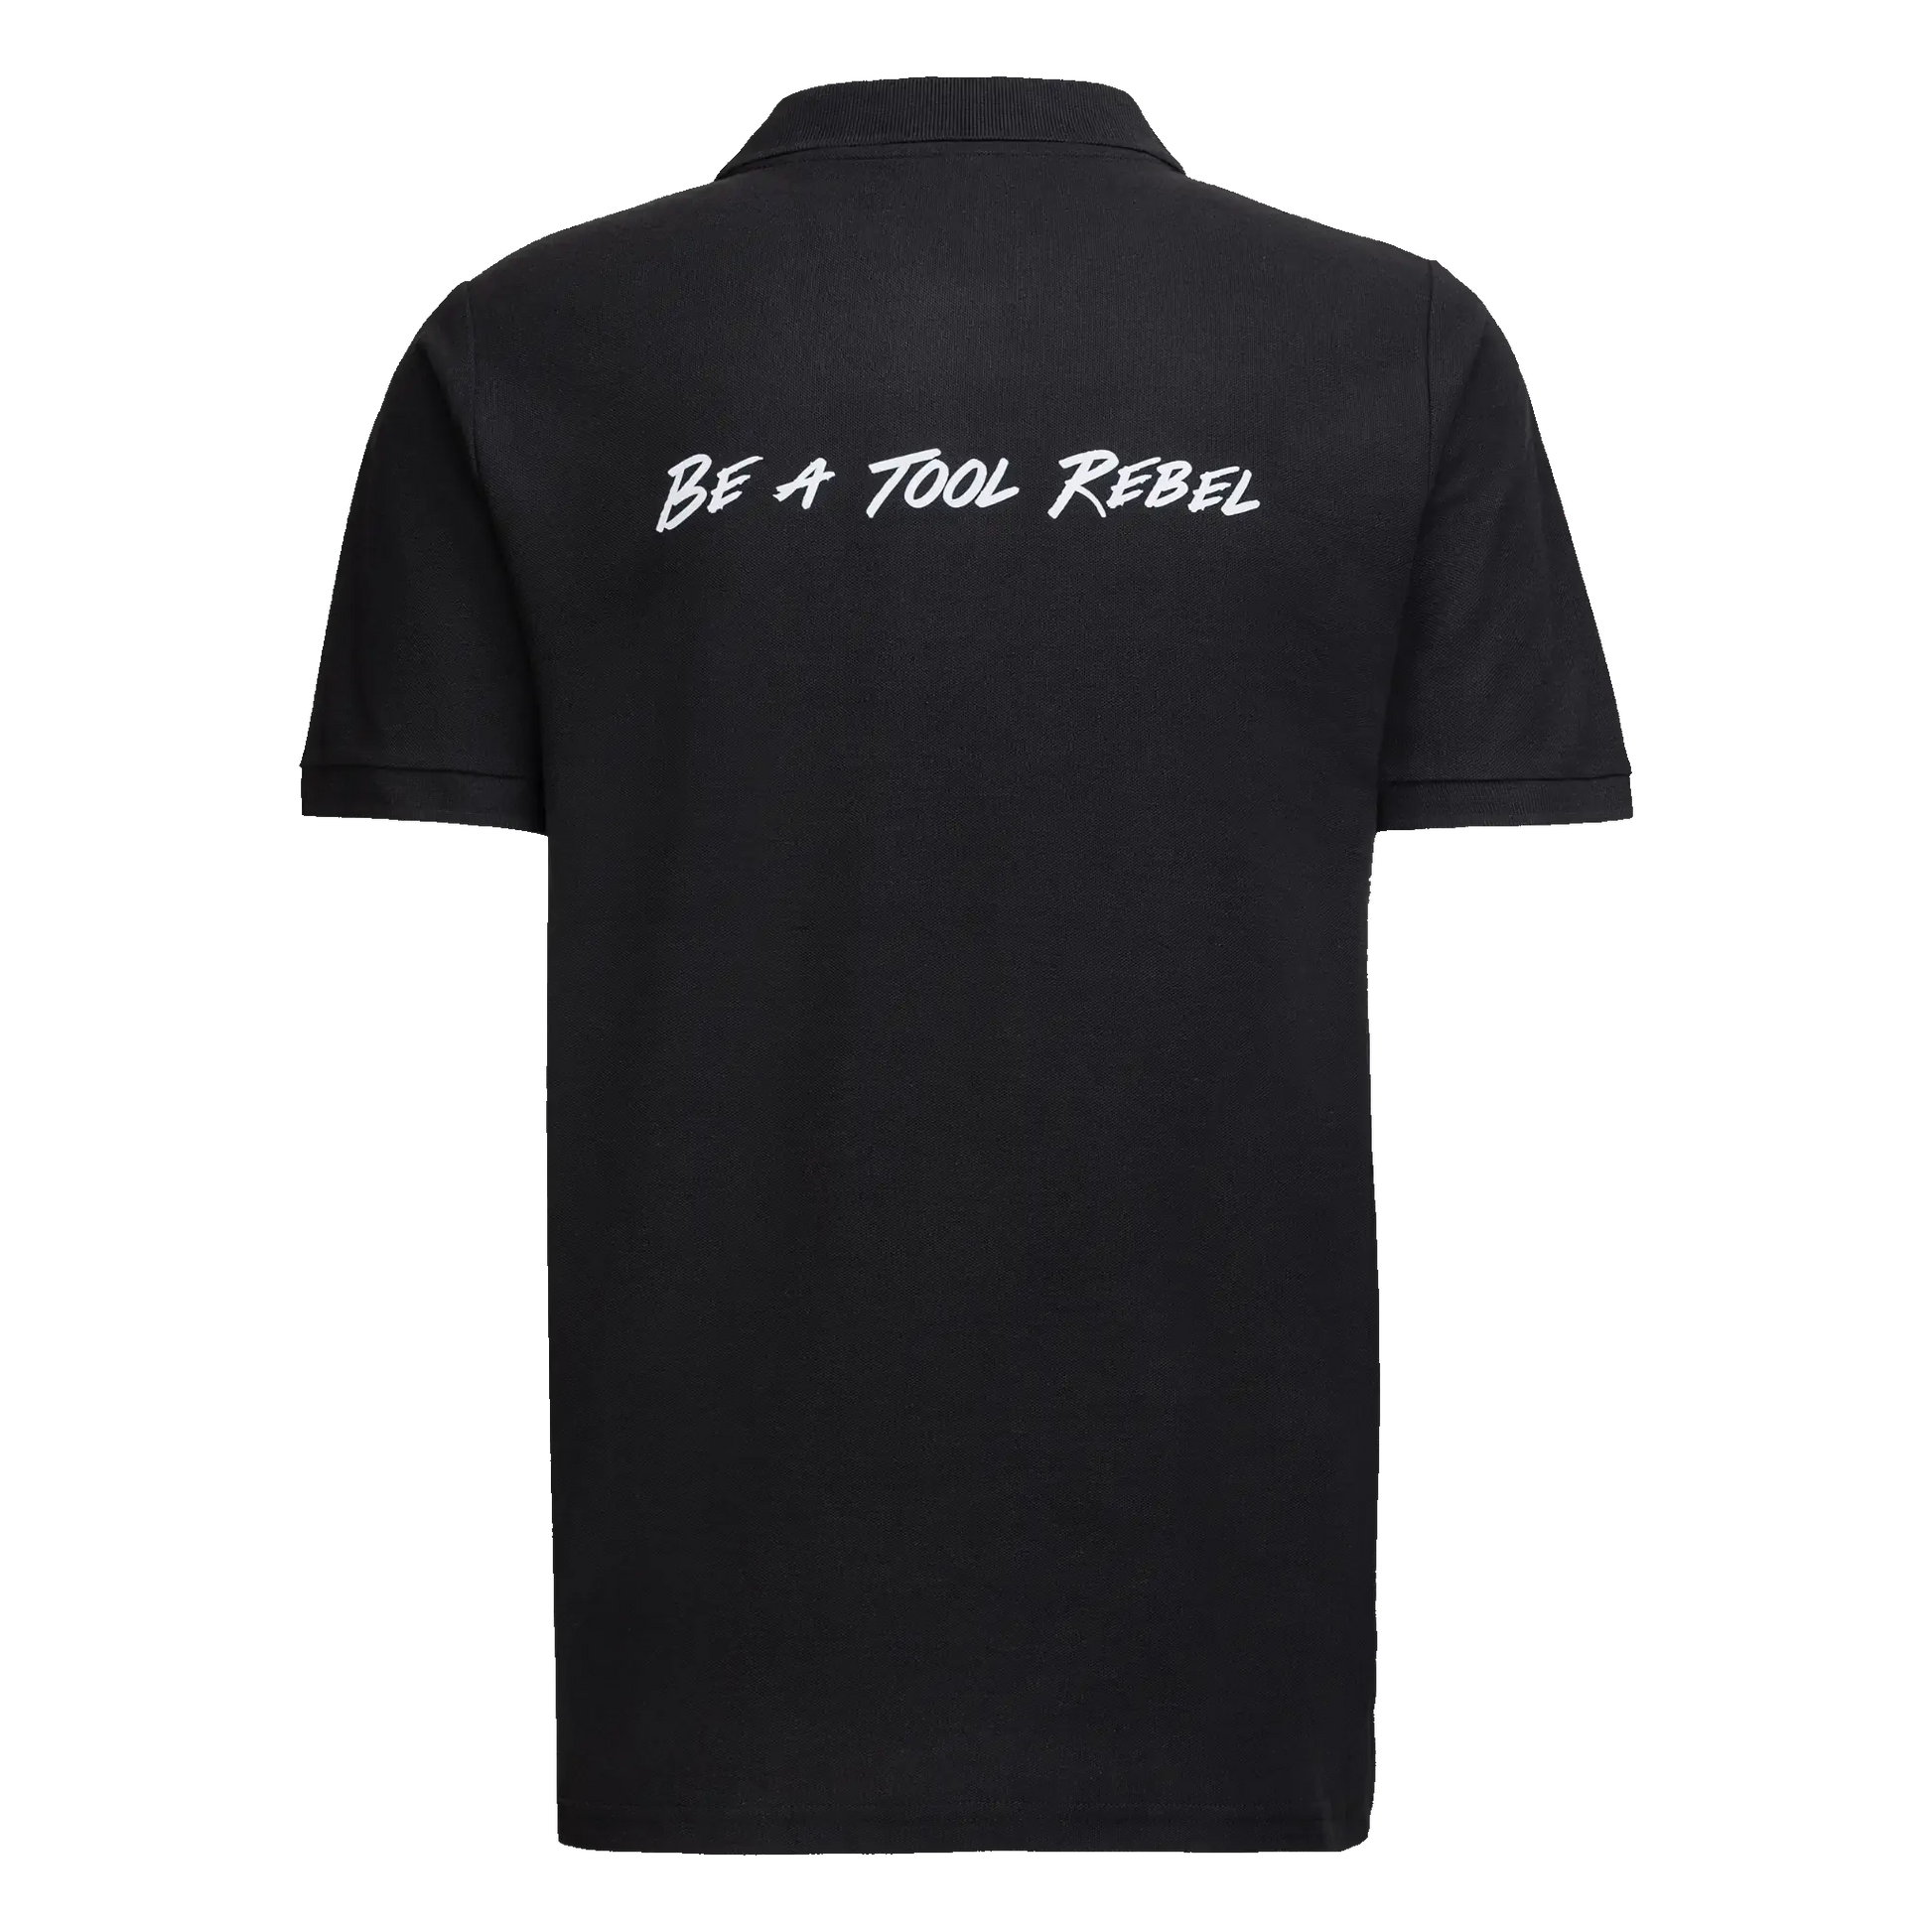 Original Wera Merchandise Polo Shirt mit Be A Tool Rebel Schriftzug auf dem Rücken